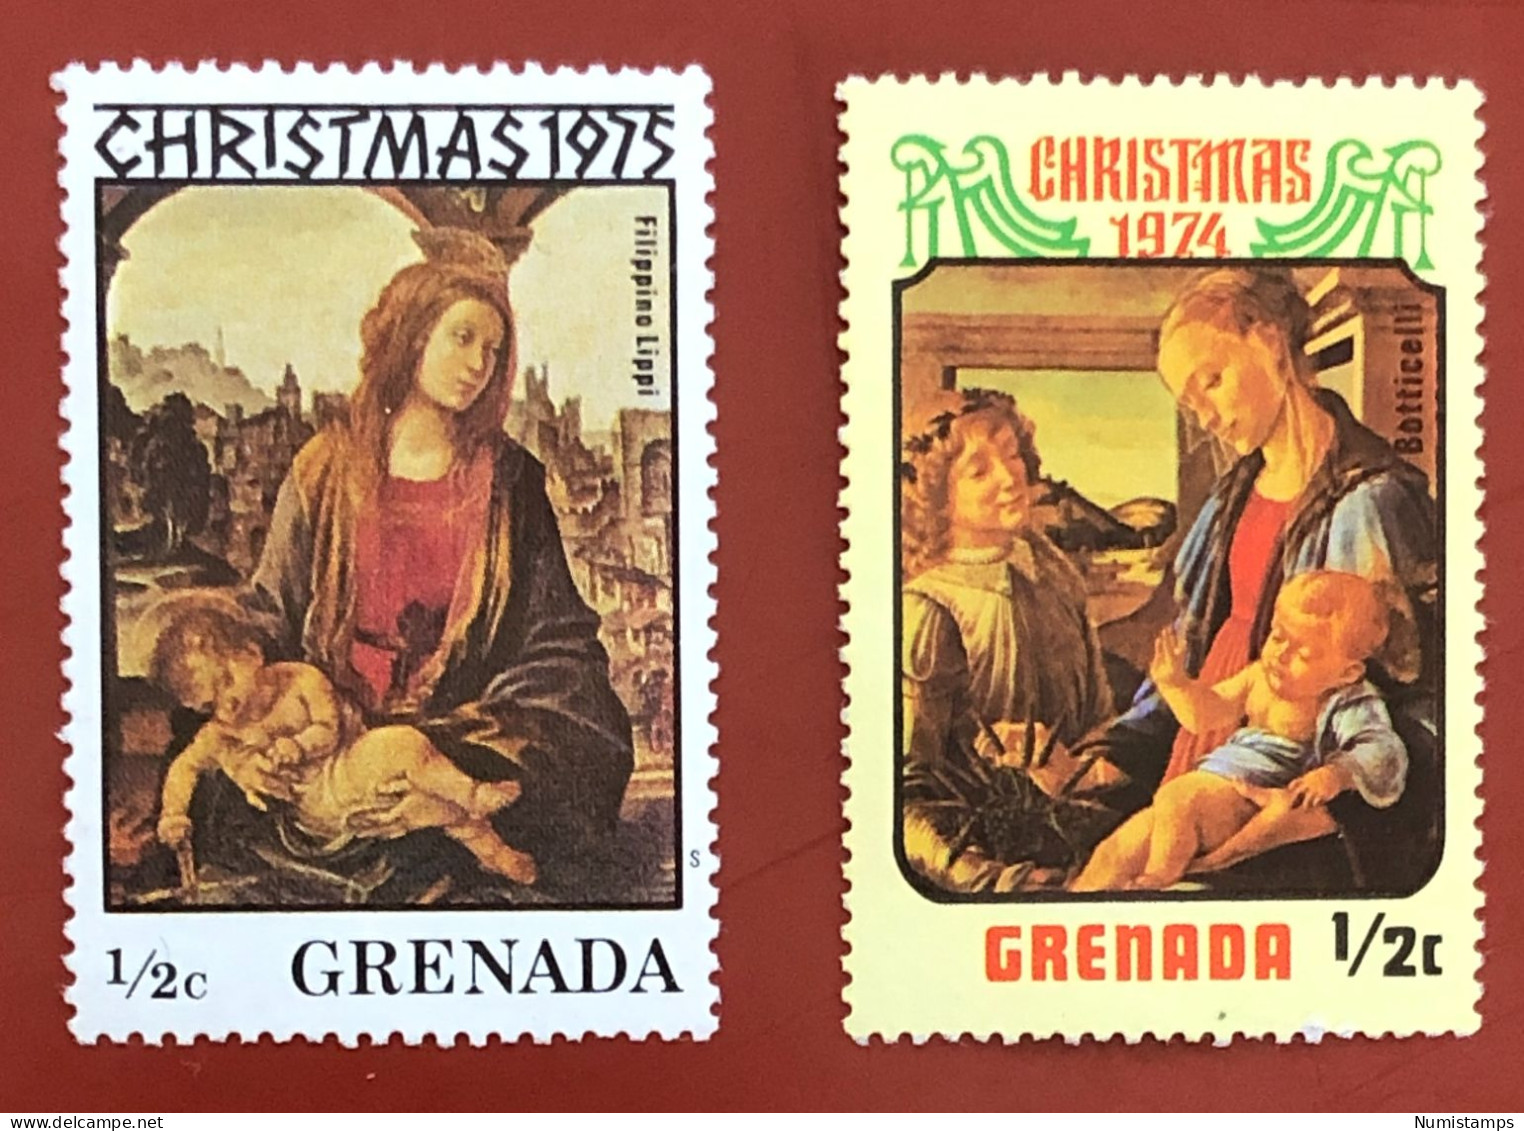 Grenada › Christmas 1974 - 1975 - Christmas